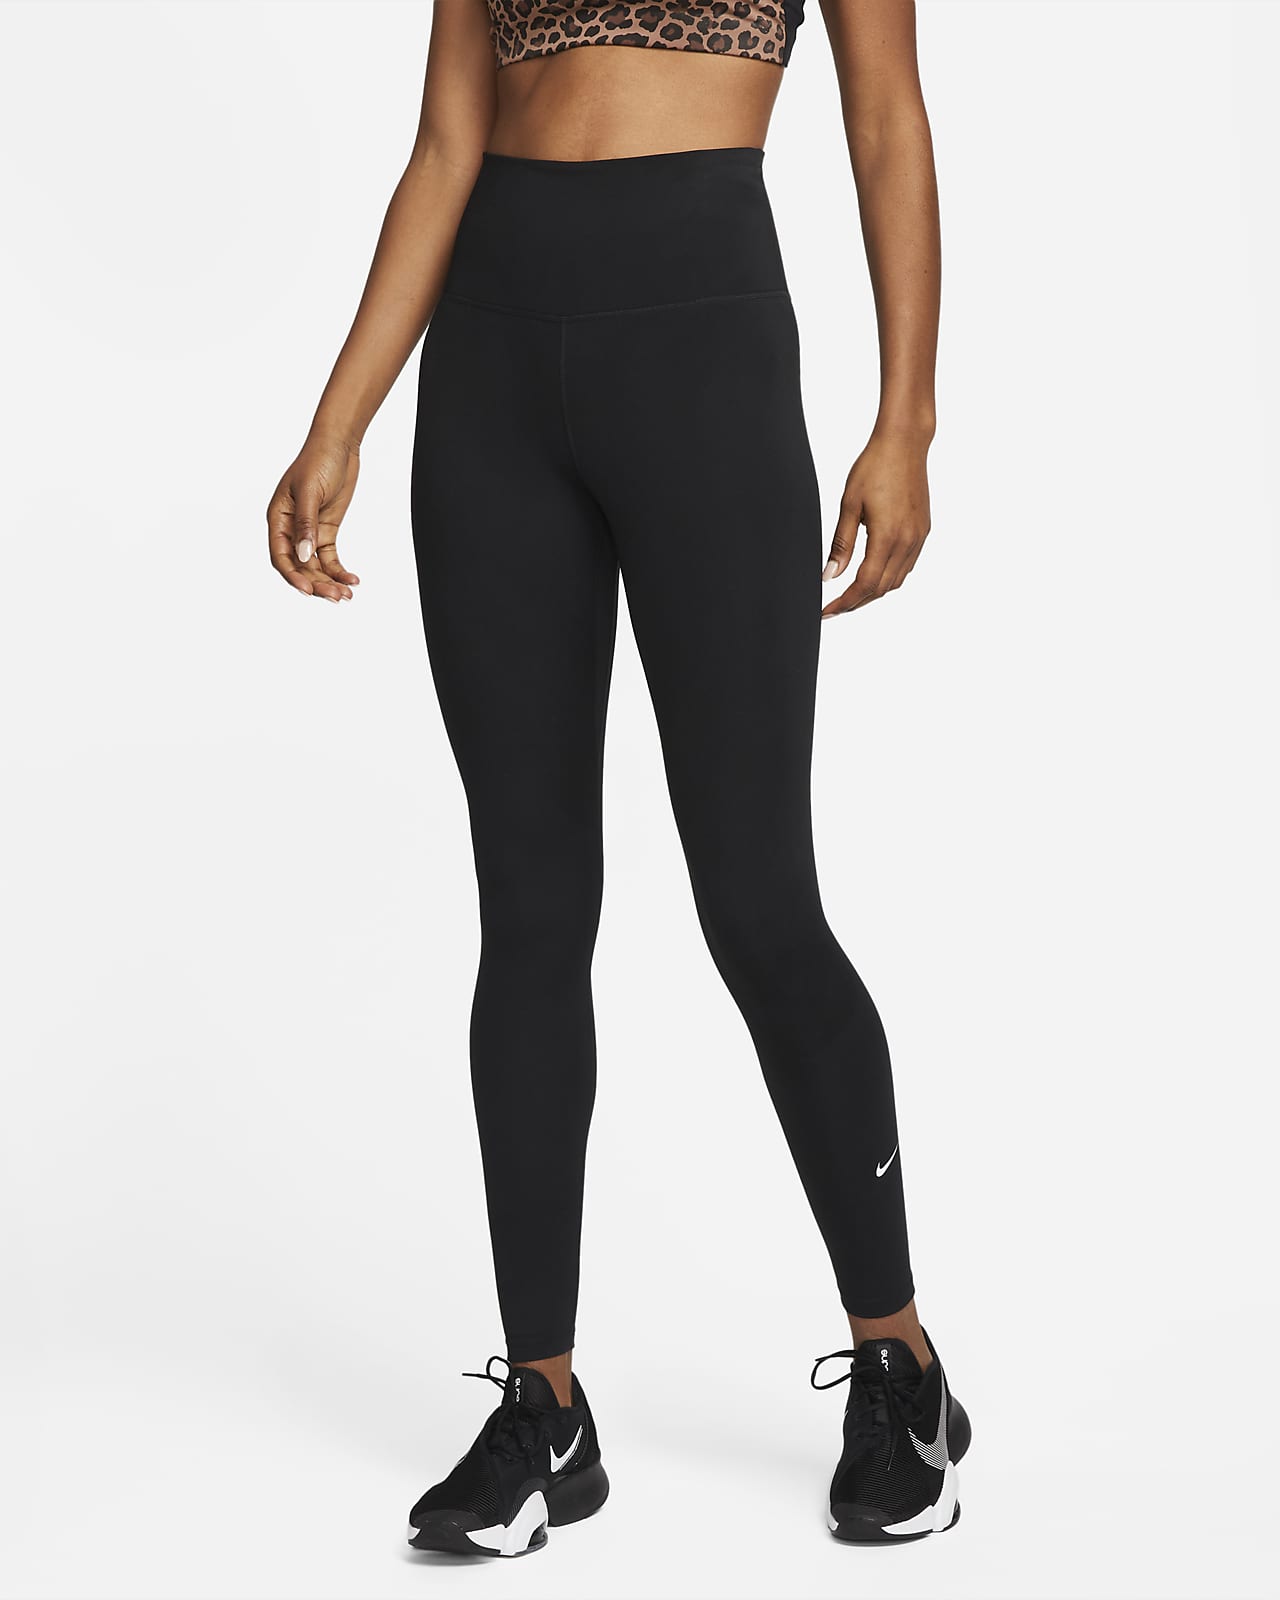 Nike One magas derekú női leggings